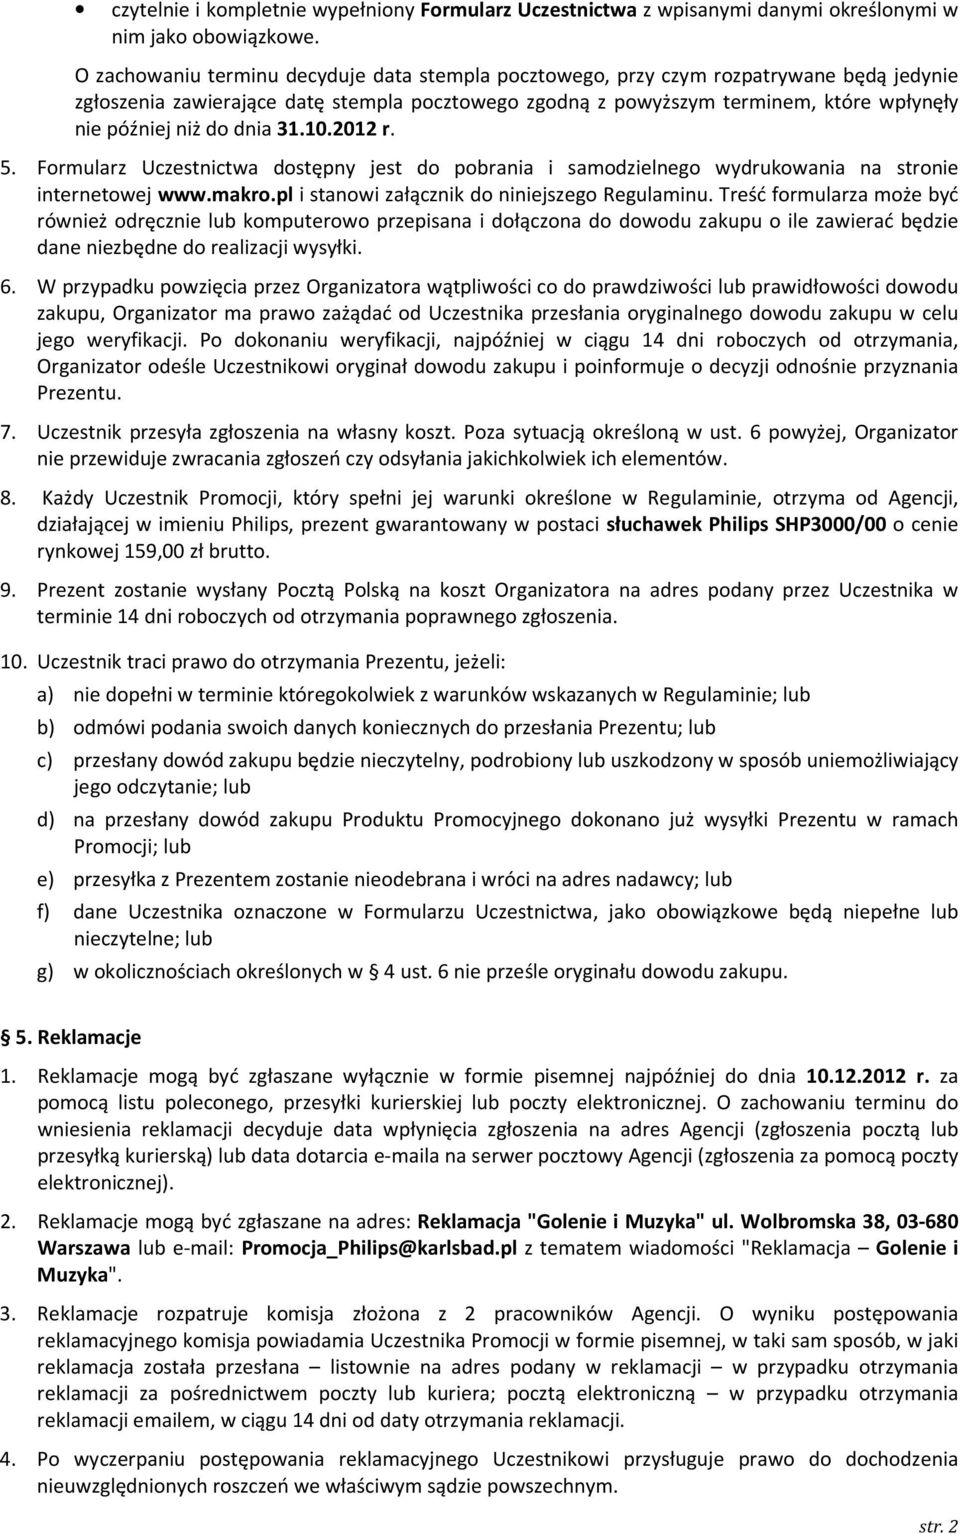 do dnia 31.10.2012 r. 5. Formularz Uczestnictwa dostępny jest do pobrania i samodzielnego wydrukowania na stronie internetowej www.makro.pl i stanowi załącznik do niniejszego Regulaminu.